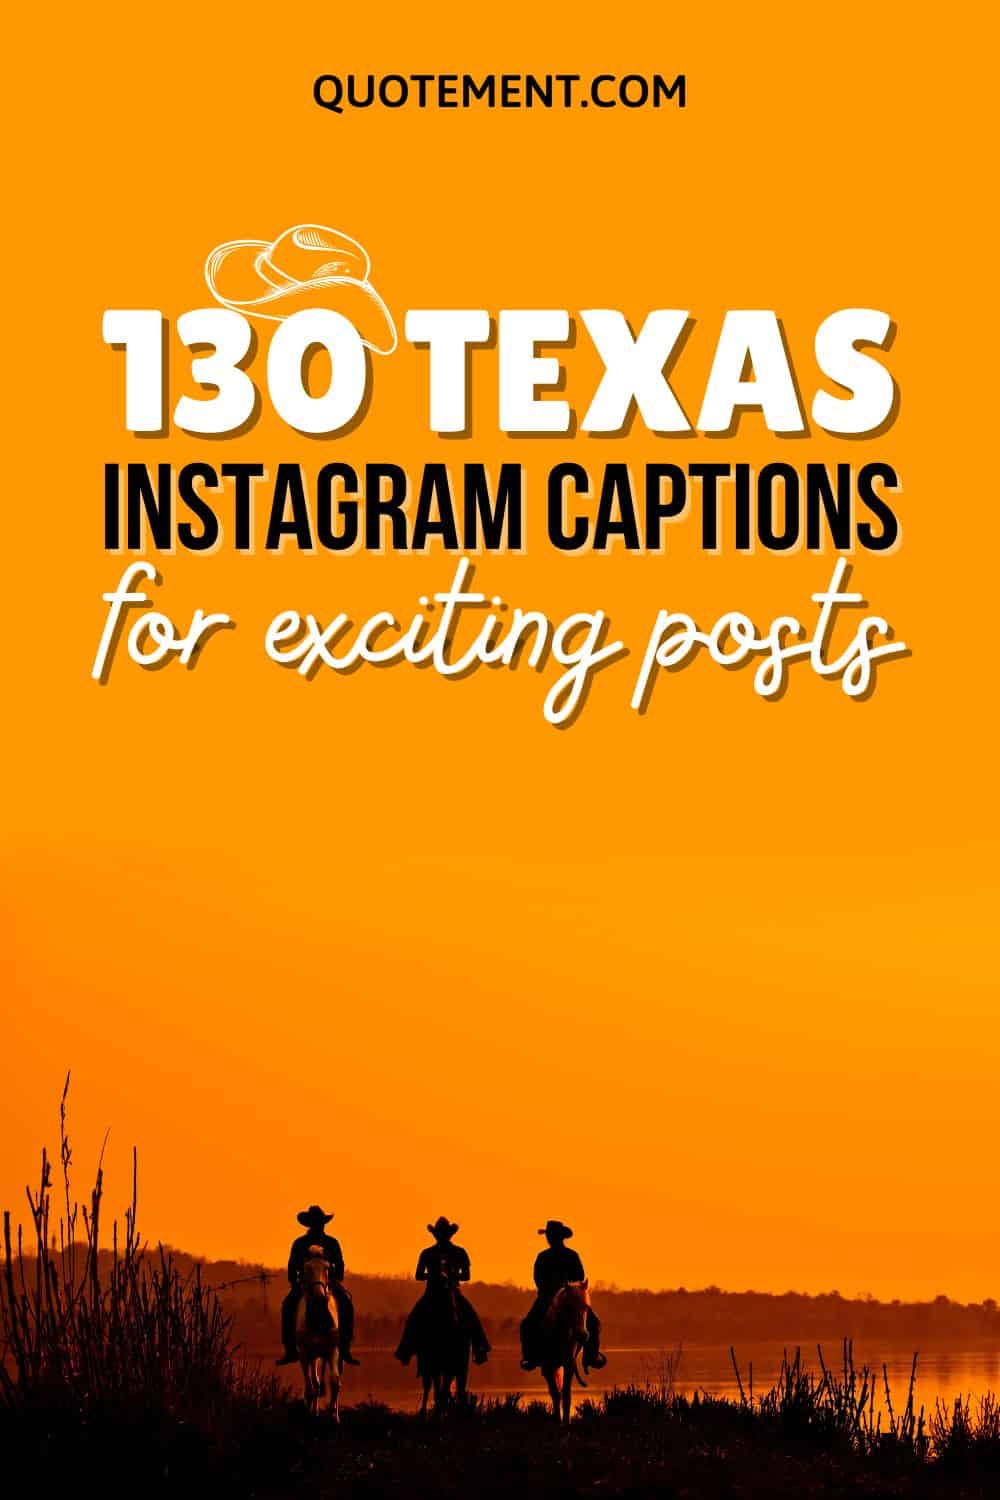 130 Texas Instagram Captions To Capture The Best Memories
